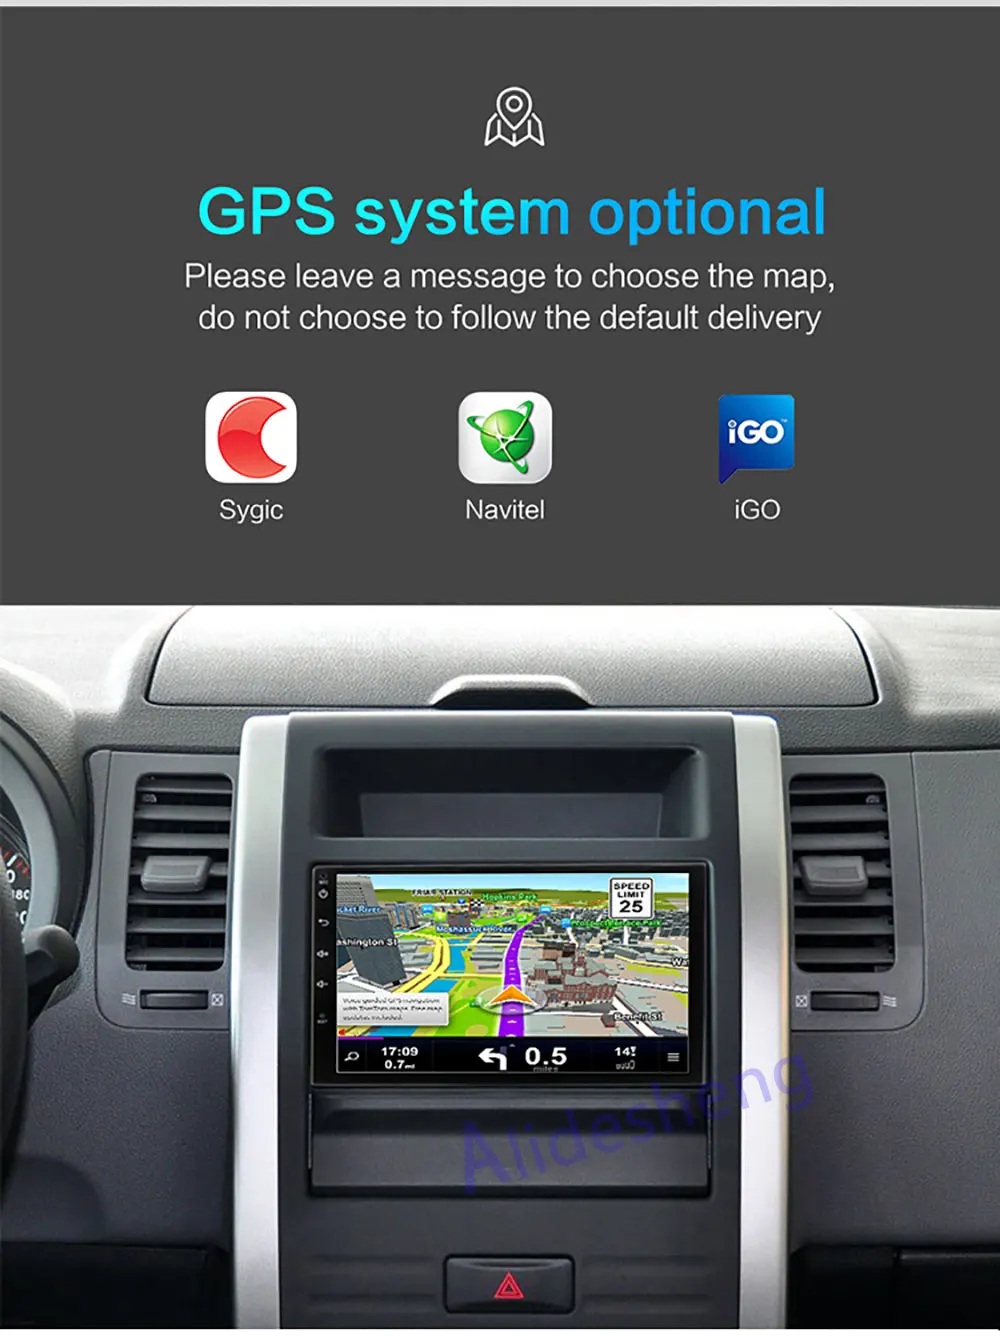 1din универсальный Android 7,1 автомобильный DVD мультимедийный плеер gps стерео радио аудио плеер для Toyota hyundai Nissan VW Suzuki